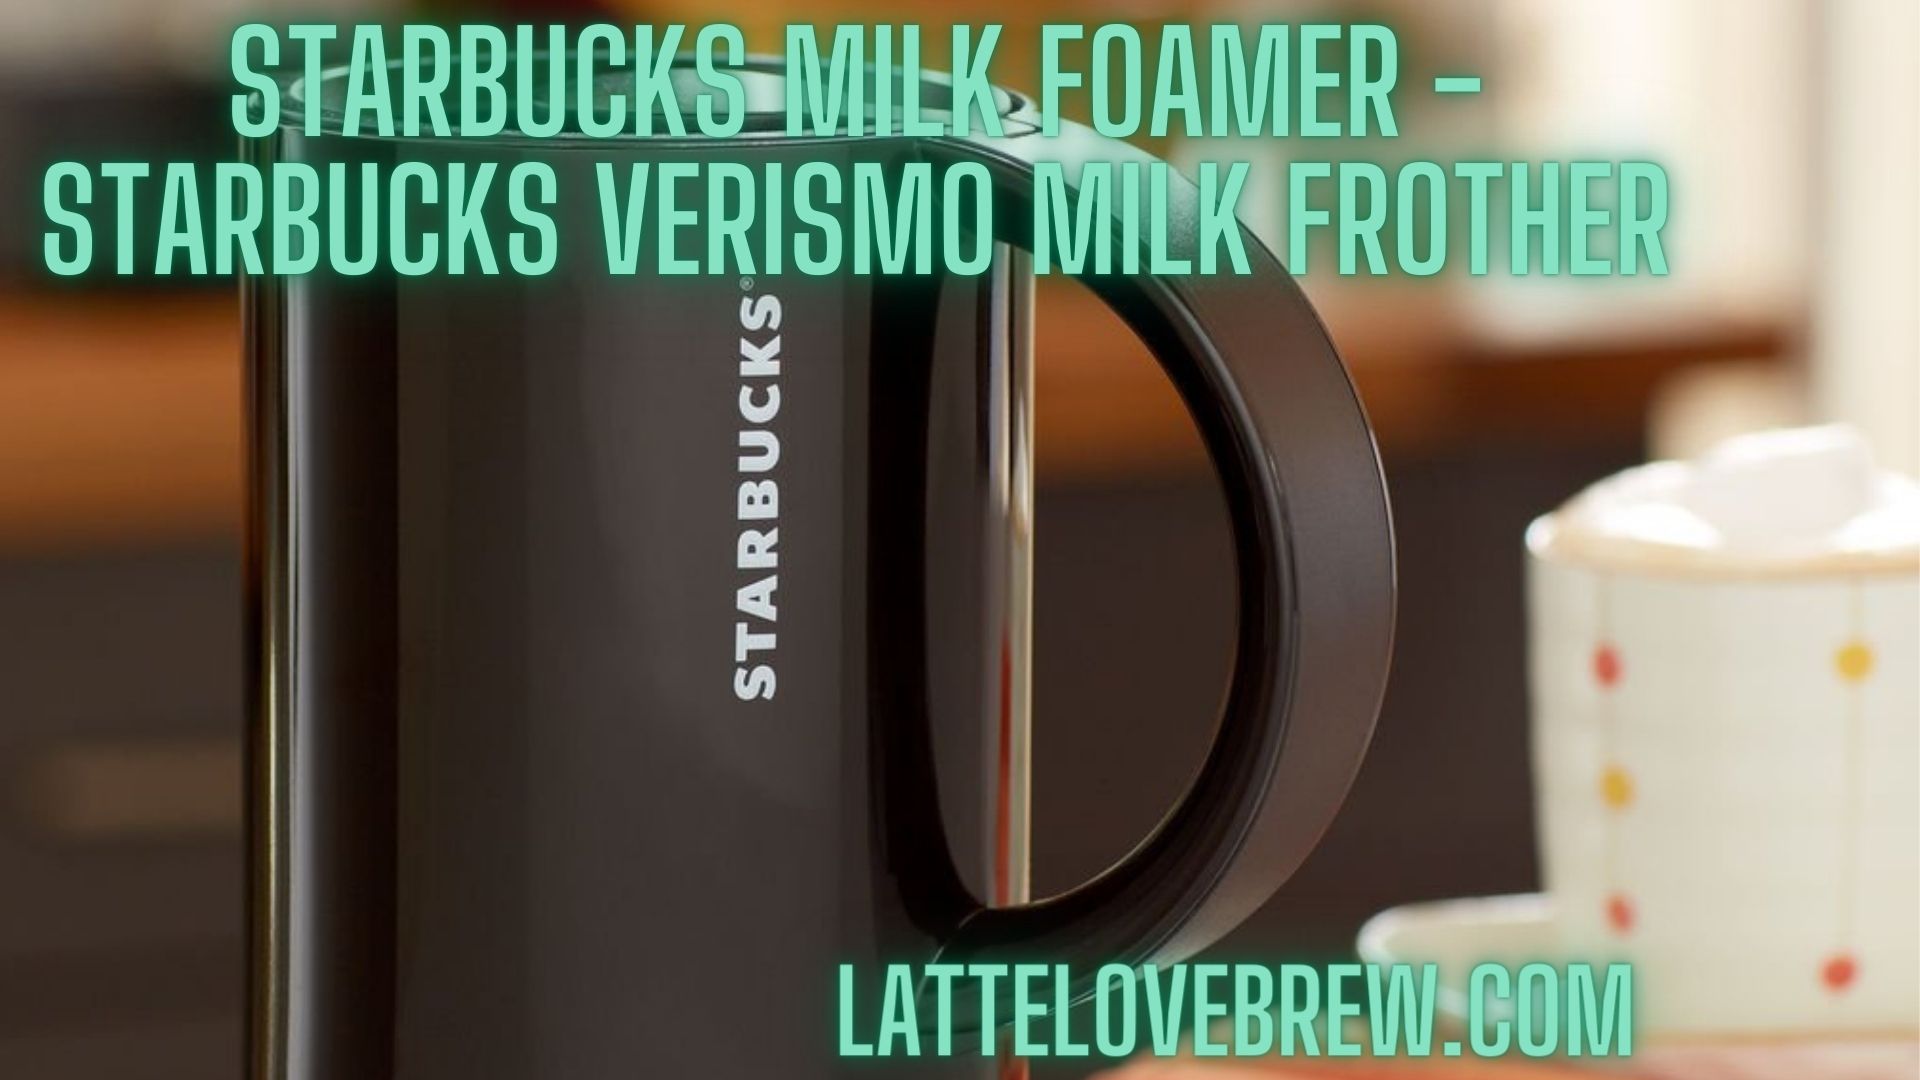 https://lattelovebrew.com/wp-content/uploads/2022/07/Starbucks-Milk-Foamer-Starbucks-Verismo-Milk-Frother-jpg.jpg